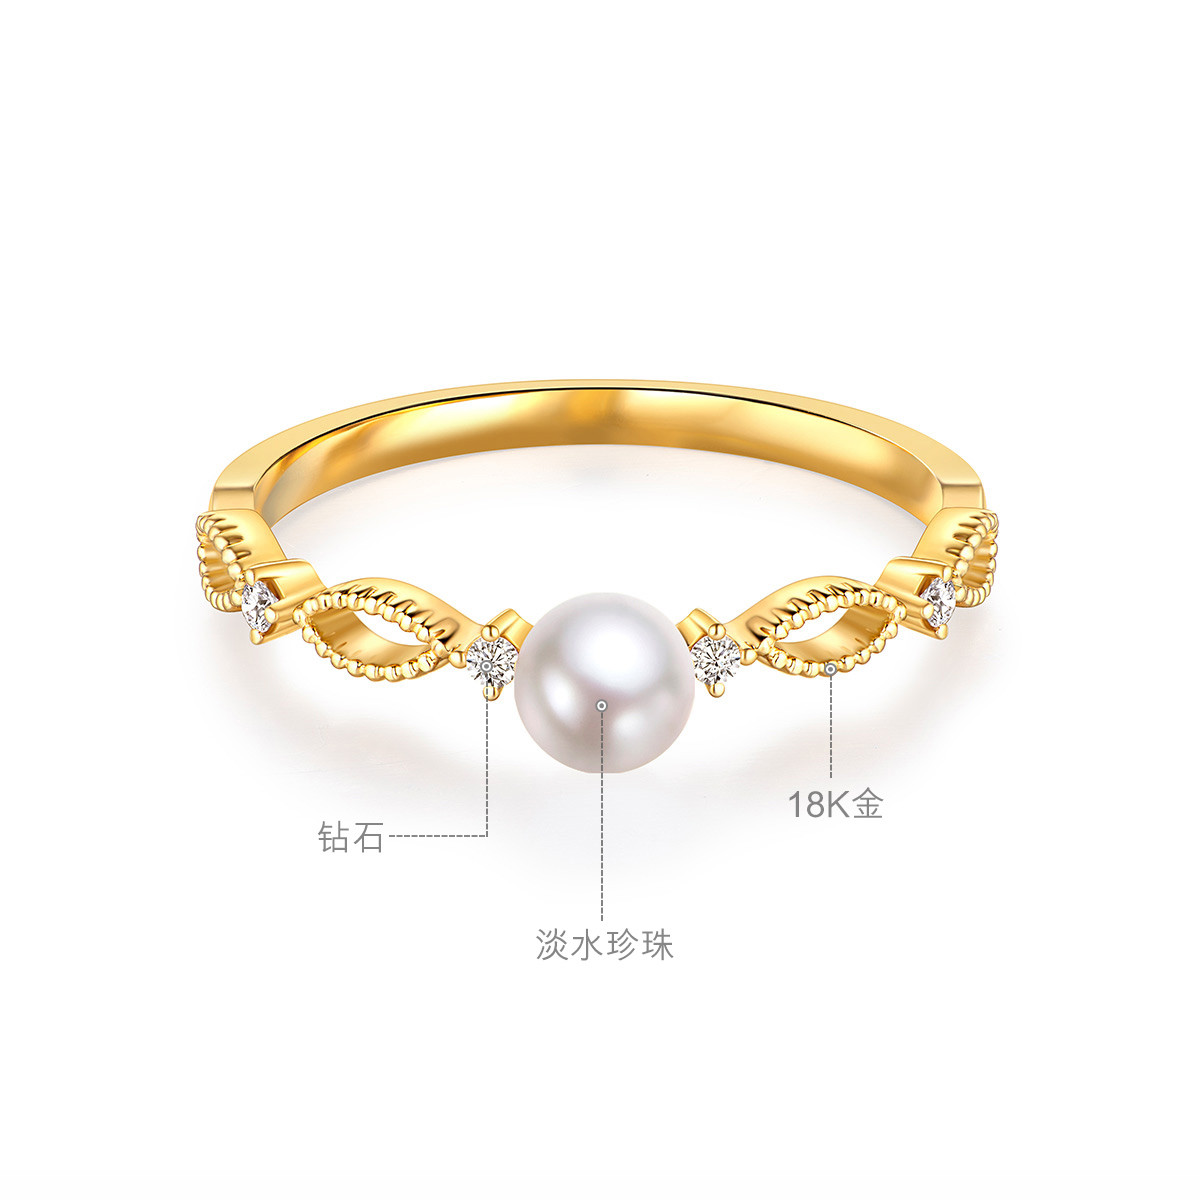 六福珠宝彩金钻戒法式少女18K金淡水珍珠钻石定价cMDSKR0010Y